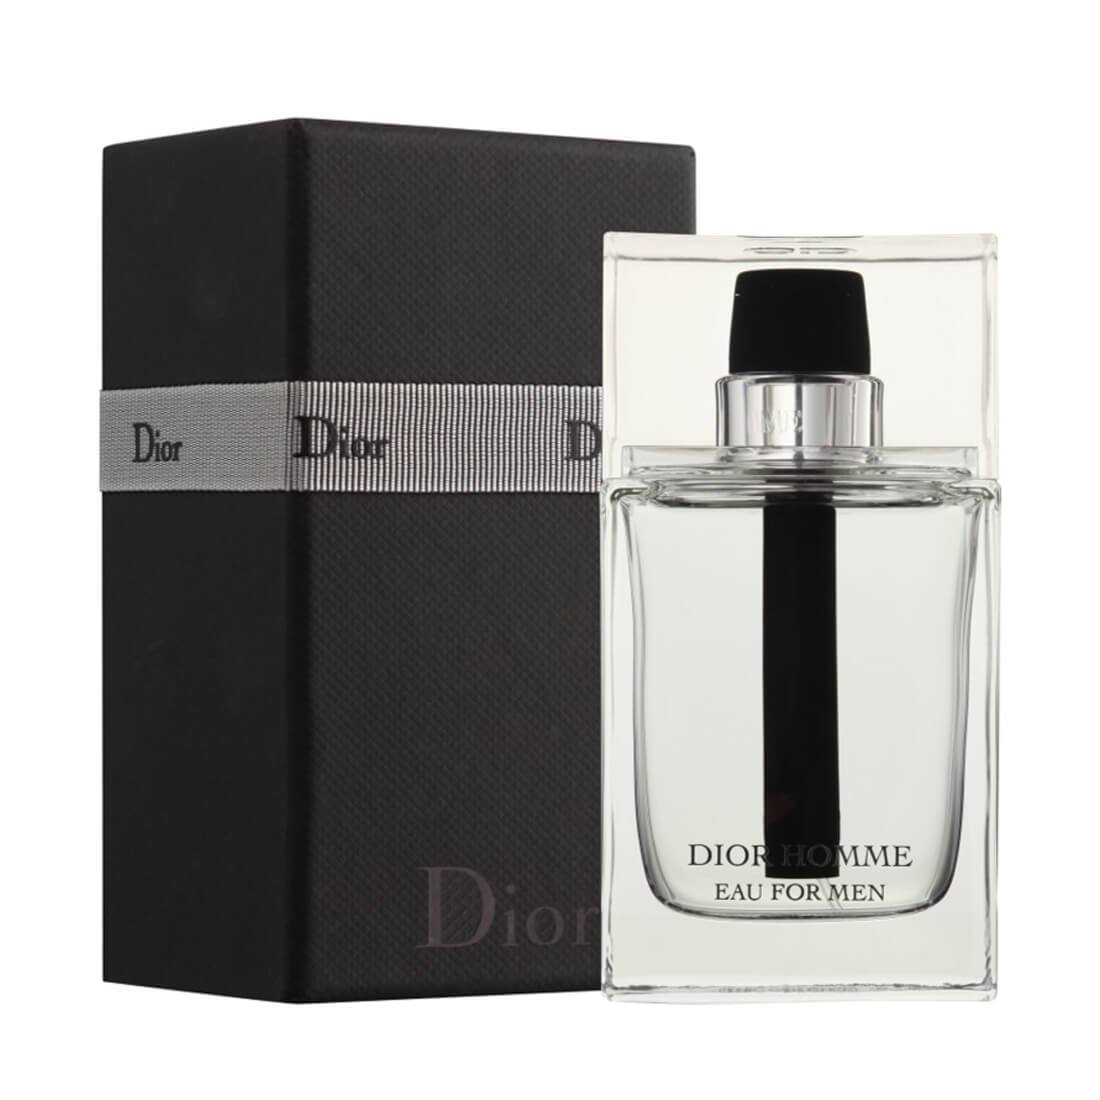 Christian Dior Homme Eau For Men Perfume Eau De Toilette - 100ml